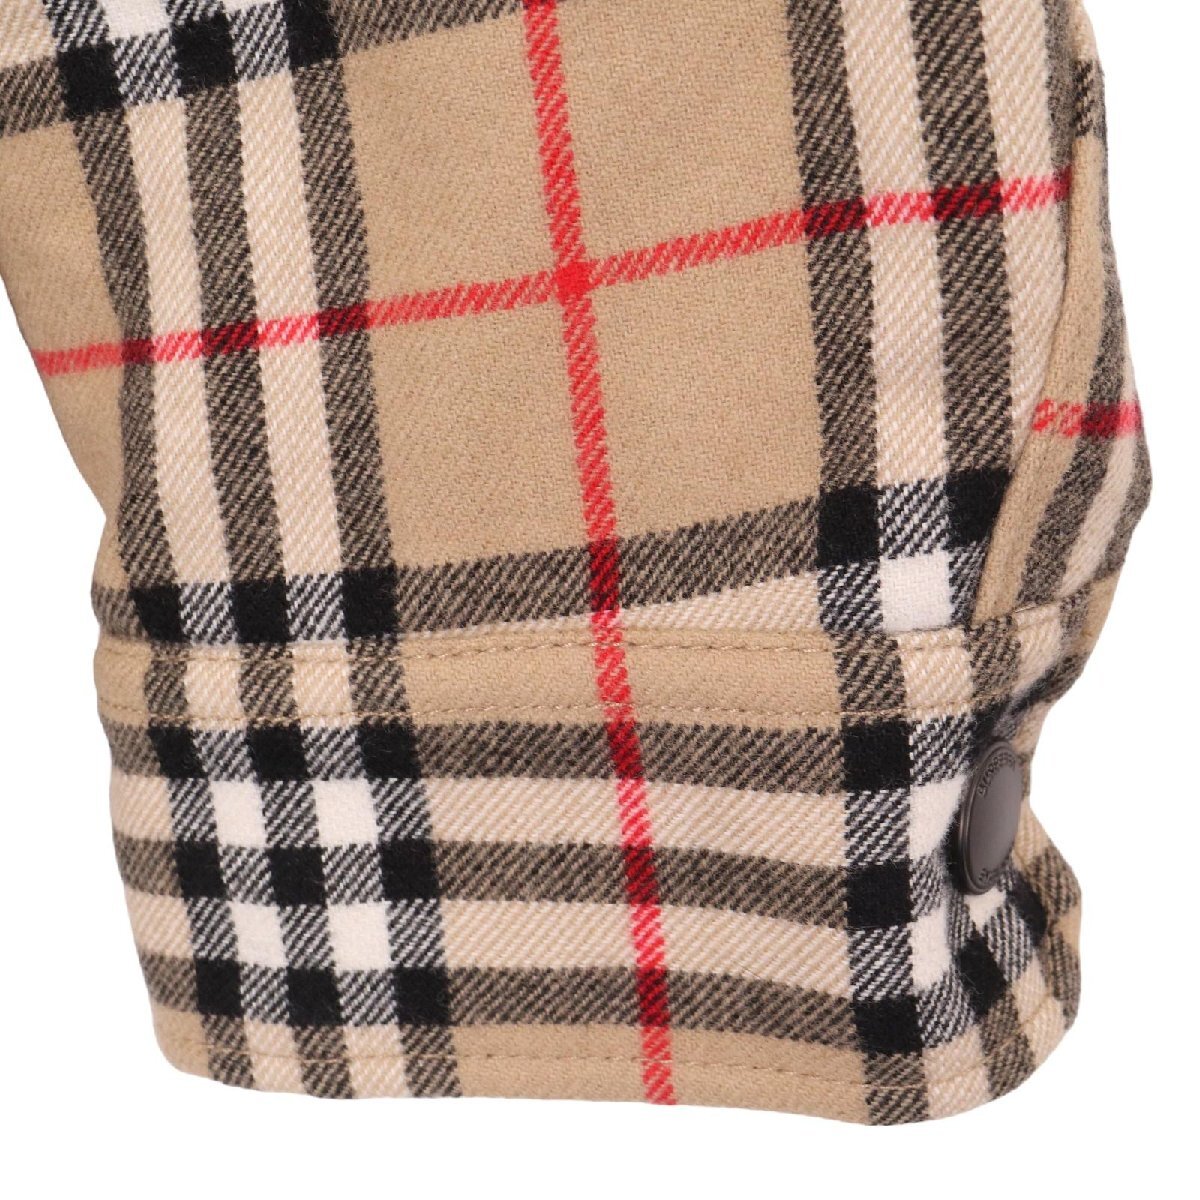 BURBERRY  Burberry    винтажный   проверка  8043839  оборотная сторона ...  превышать  размер   рубашка   пиджак   бежевый  XS  пиджак   шерсть   мужской   подержанный товар 